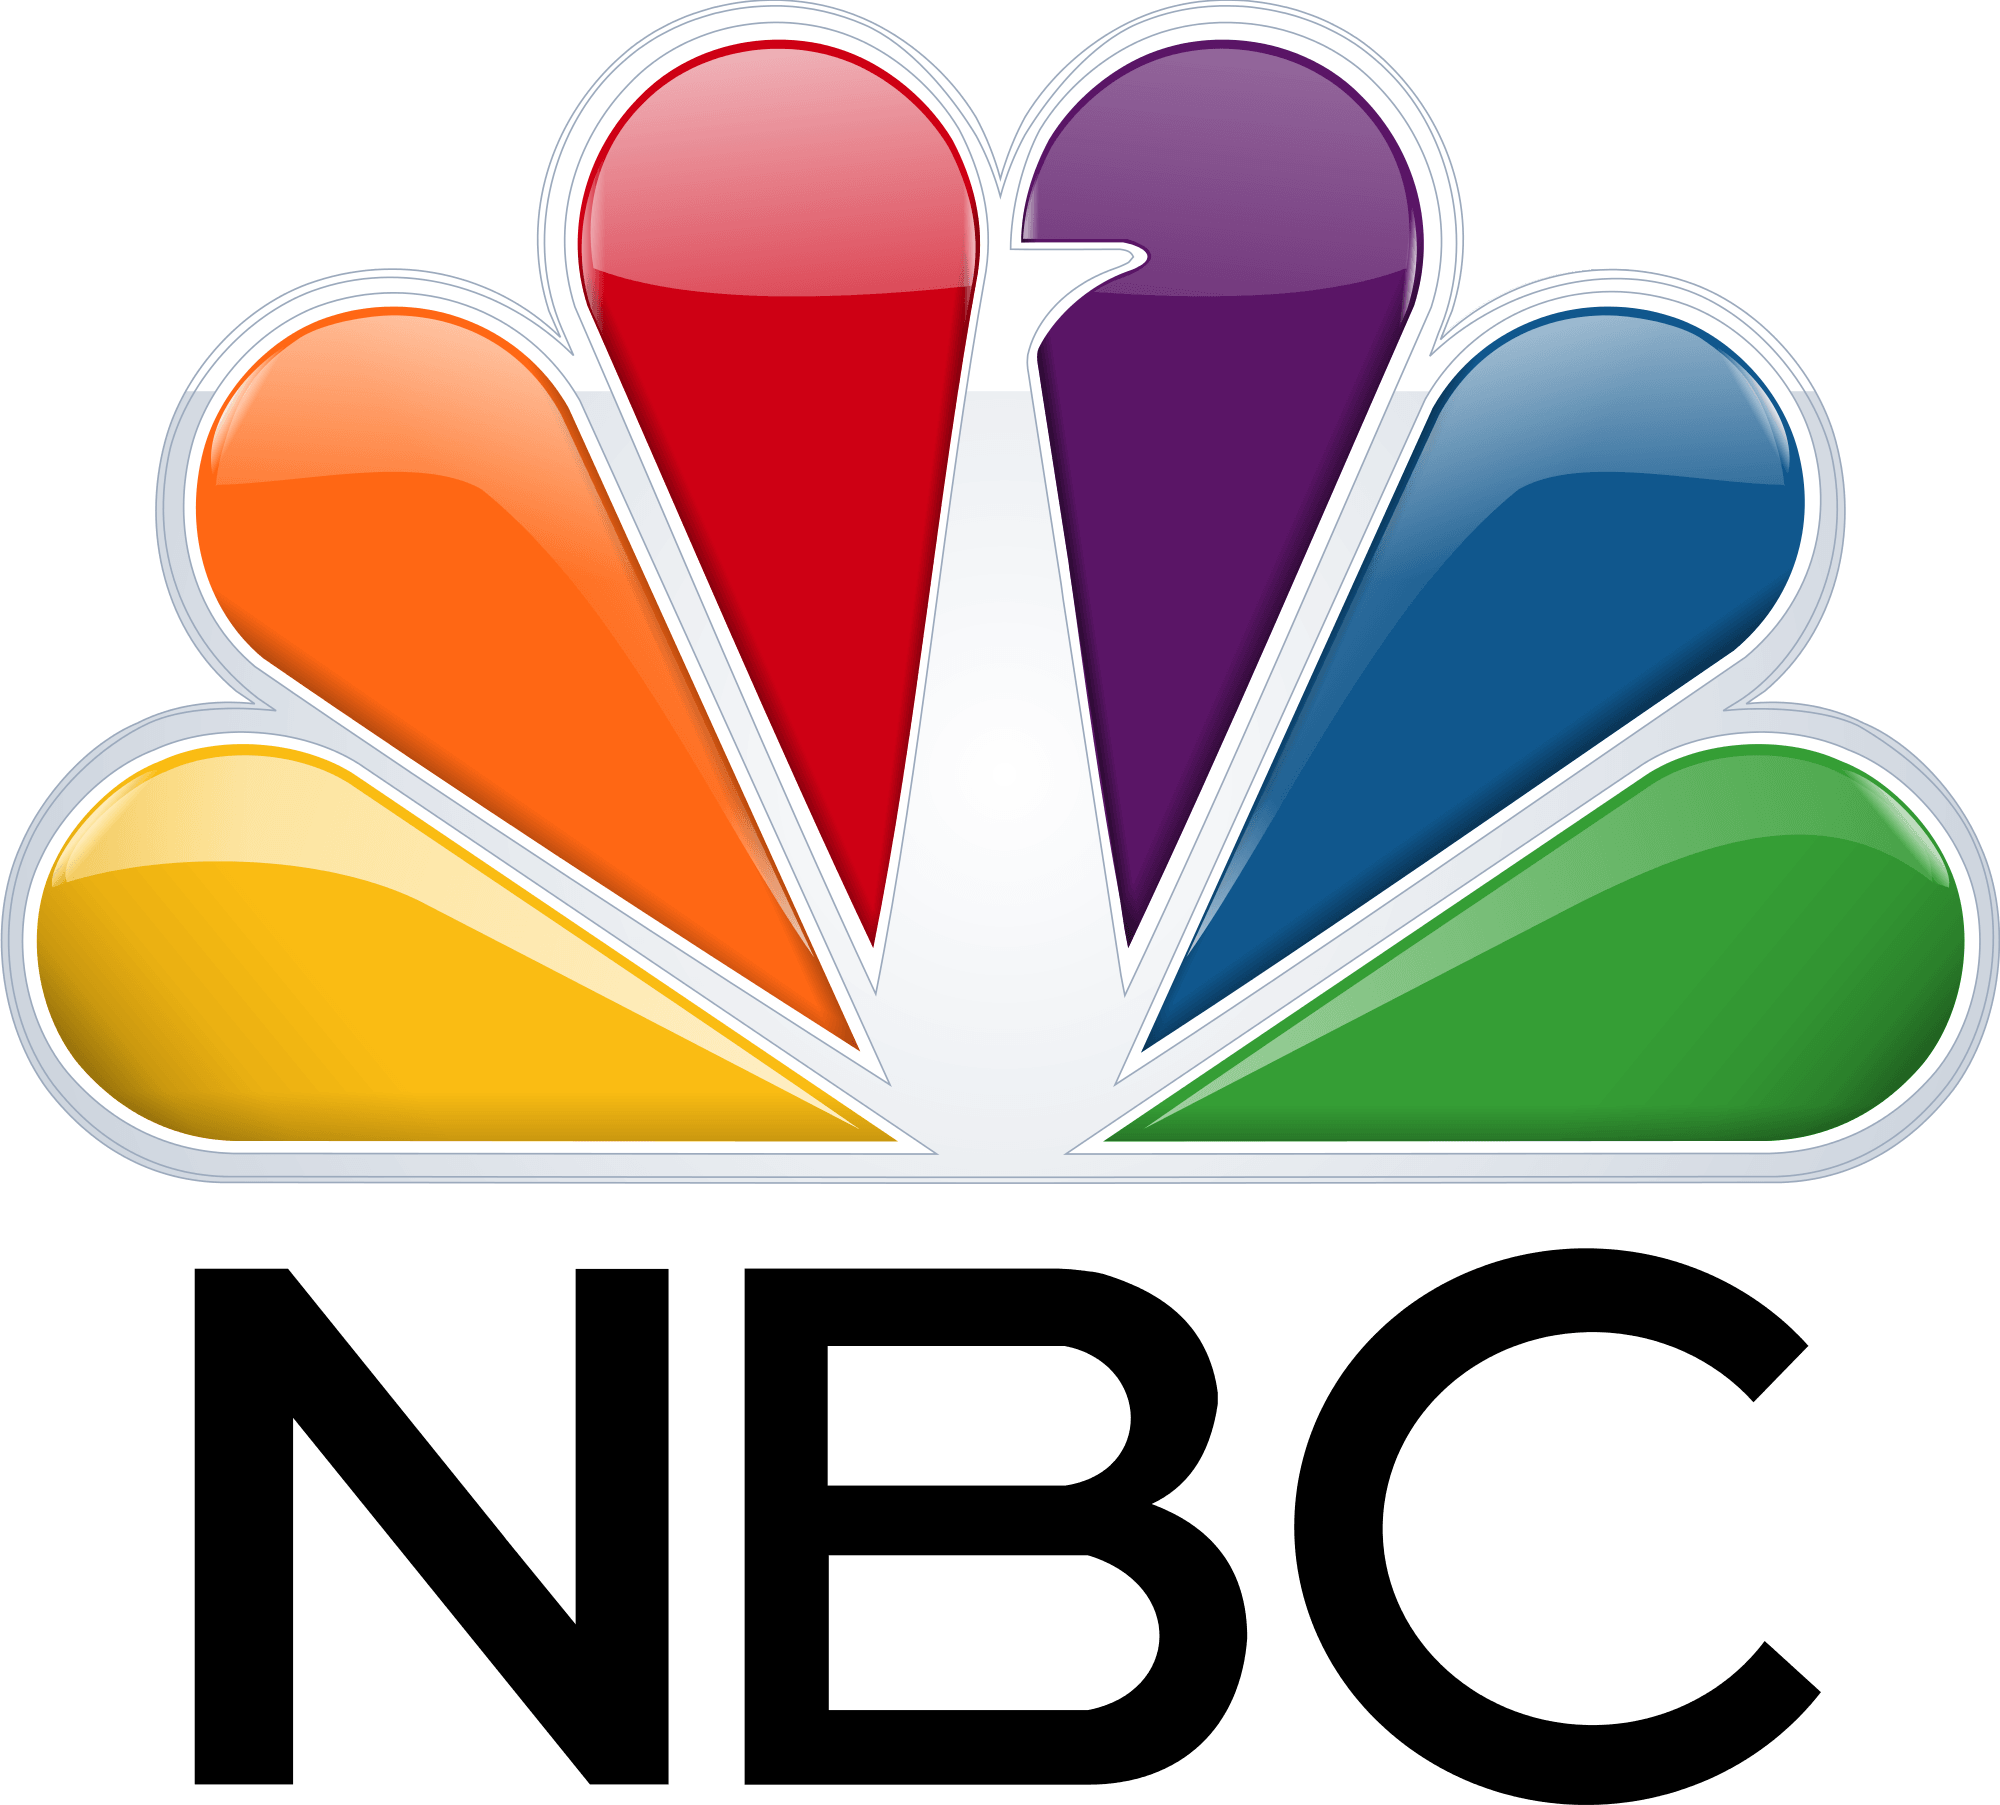 Msnbc.com Logo - MSNBC vs. MSNBC.COM Just Part of a Bigger NBC Brand Problem